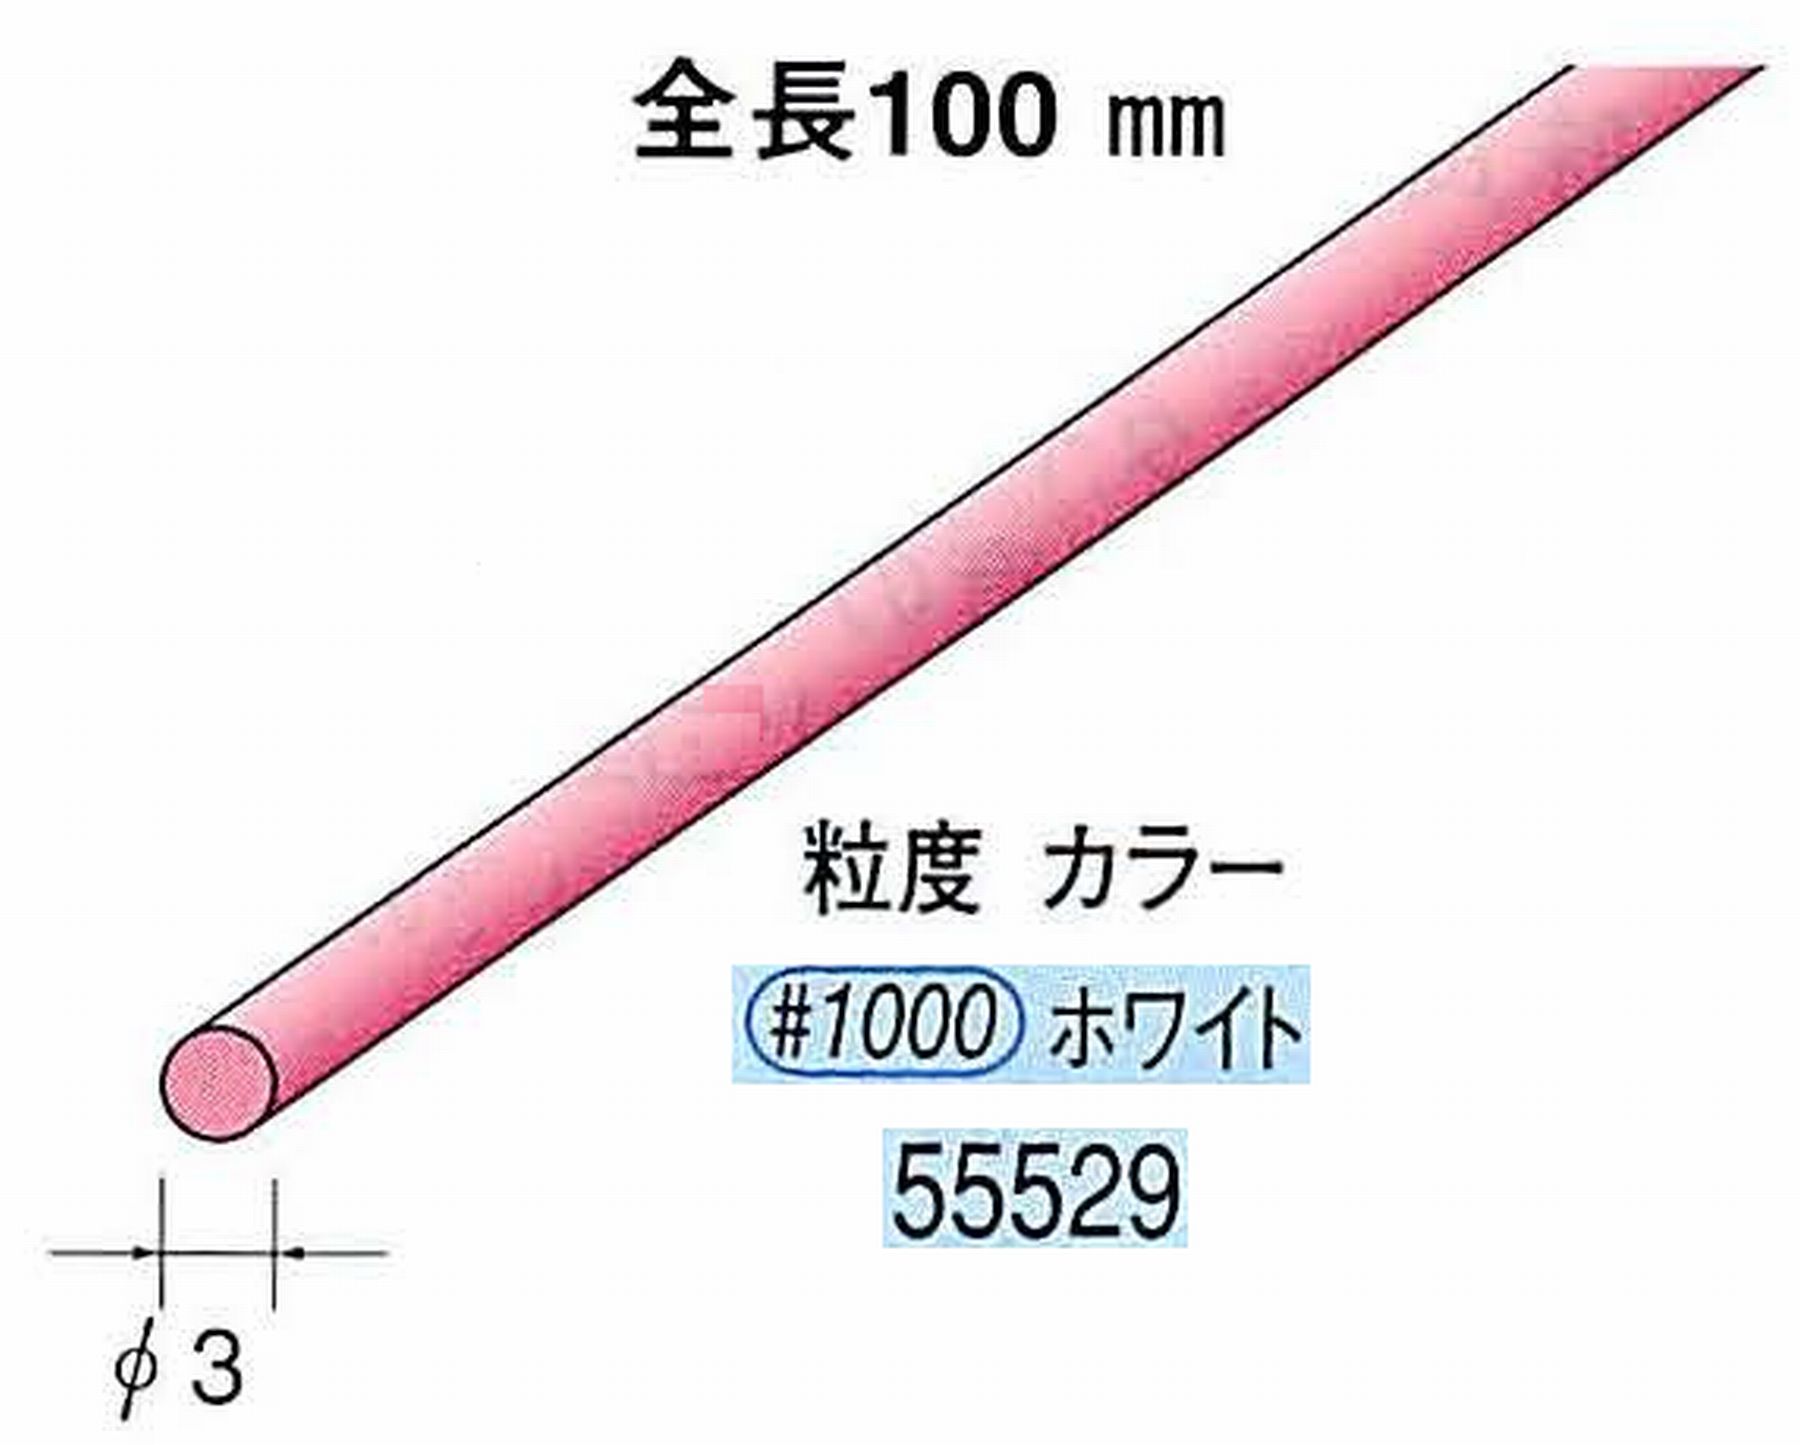 ナカニシ/NAKANISHI セラファイバー砥石 全長100mm ホワイト φ3mm 55529